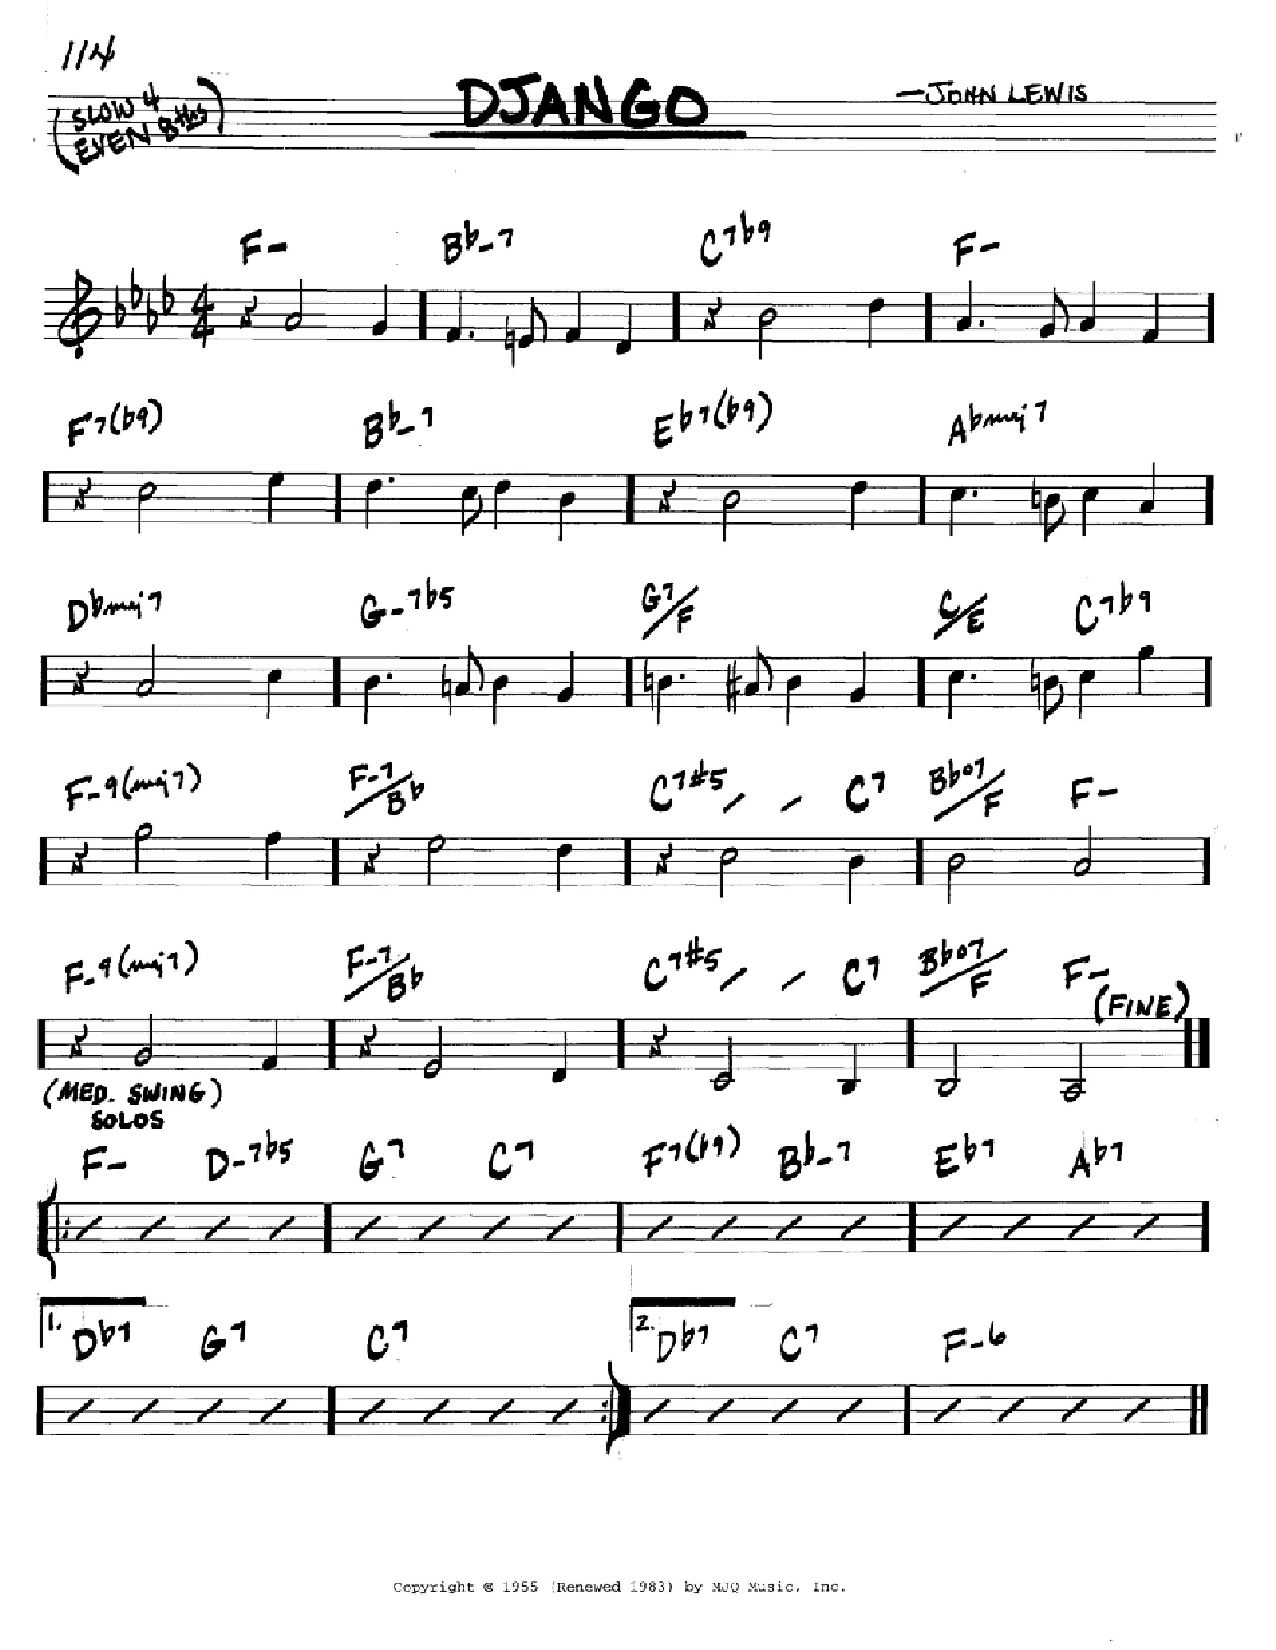 John Lewis Django sheet music notes and chords. Download Printable PDF.